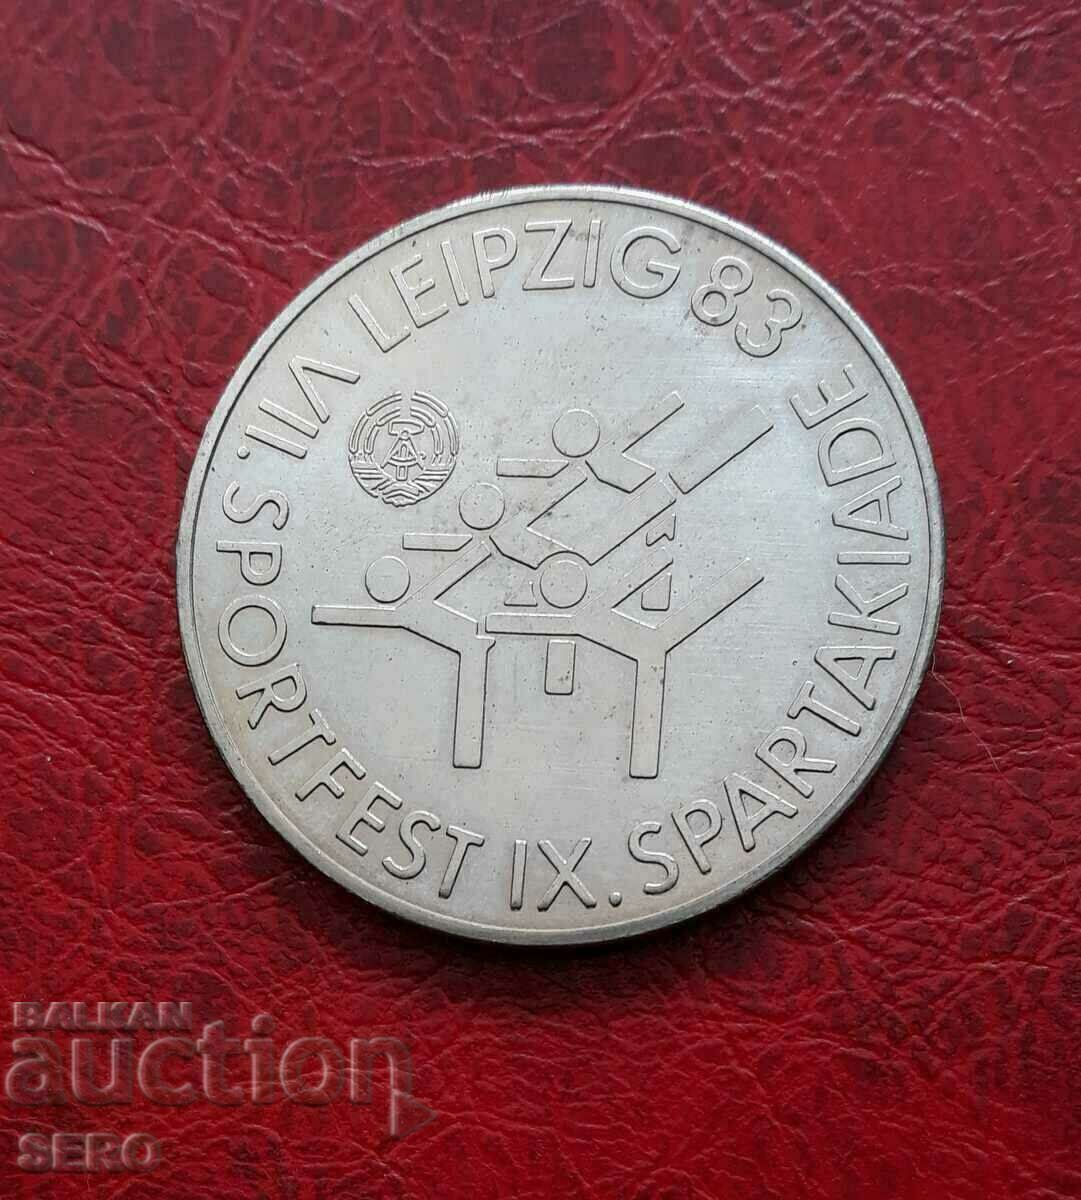 Germania-GDR-medalie -IX Spartakiad Leipzig 1983